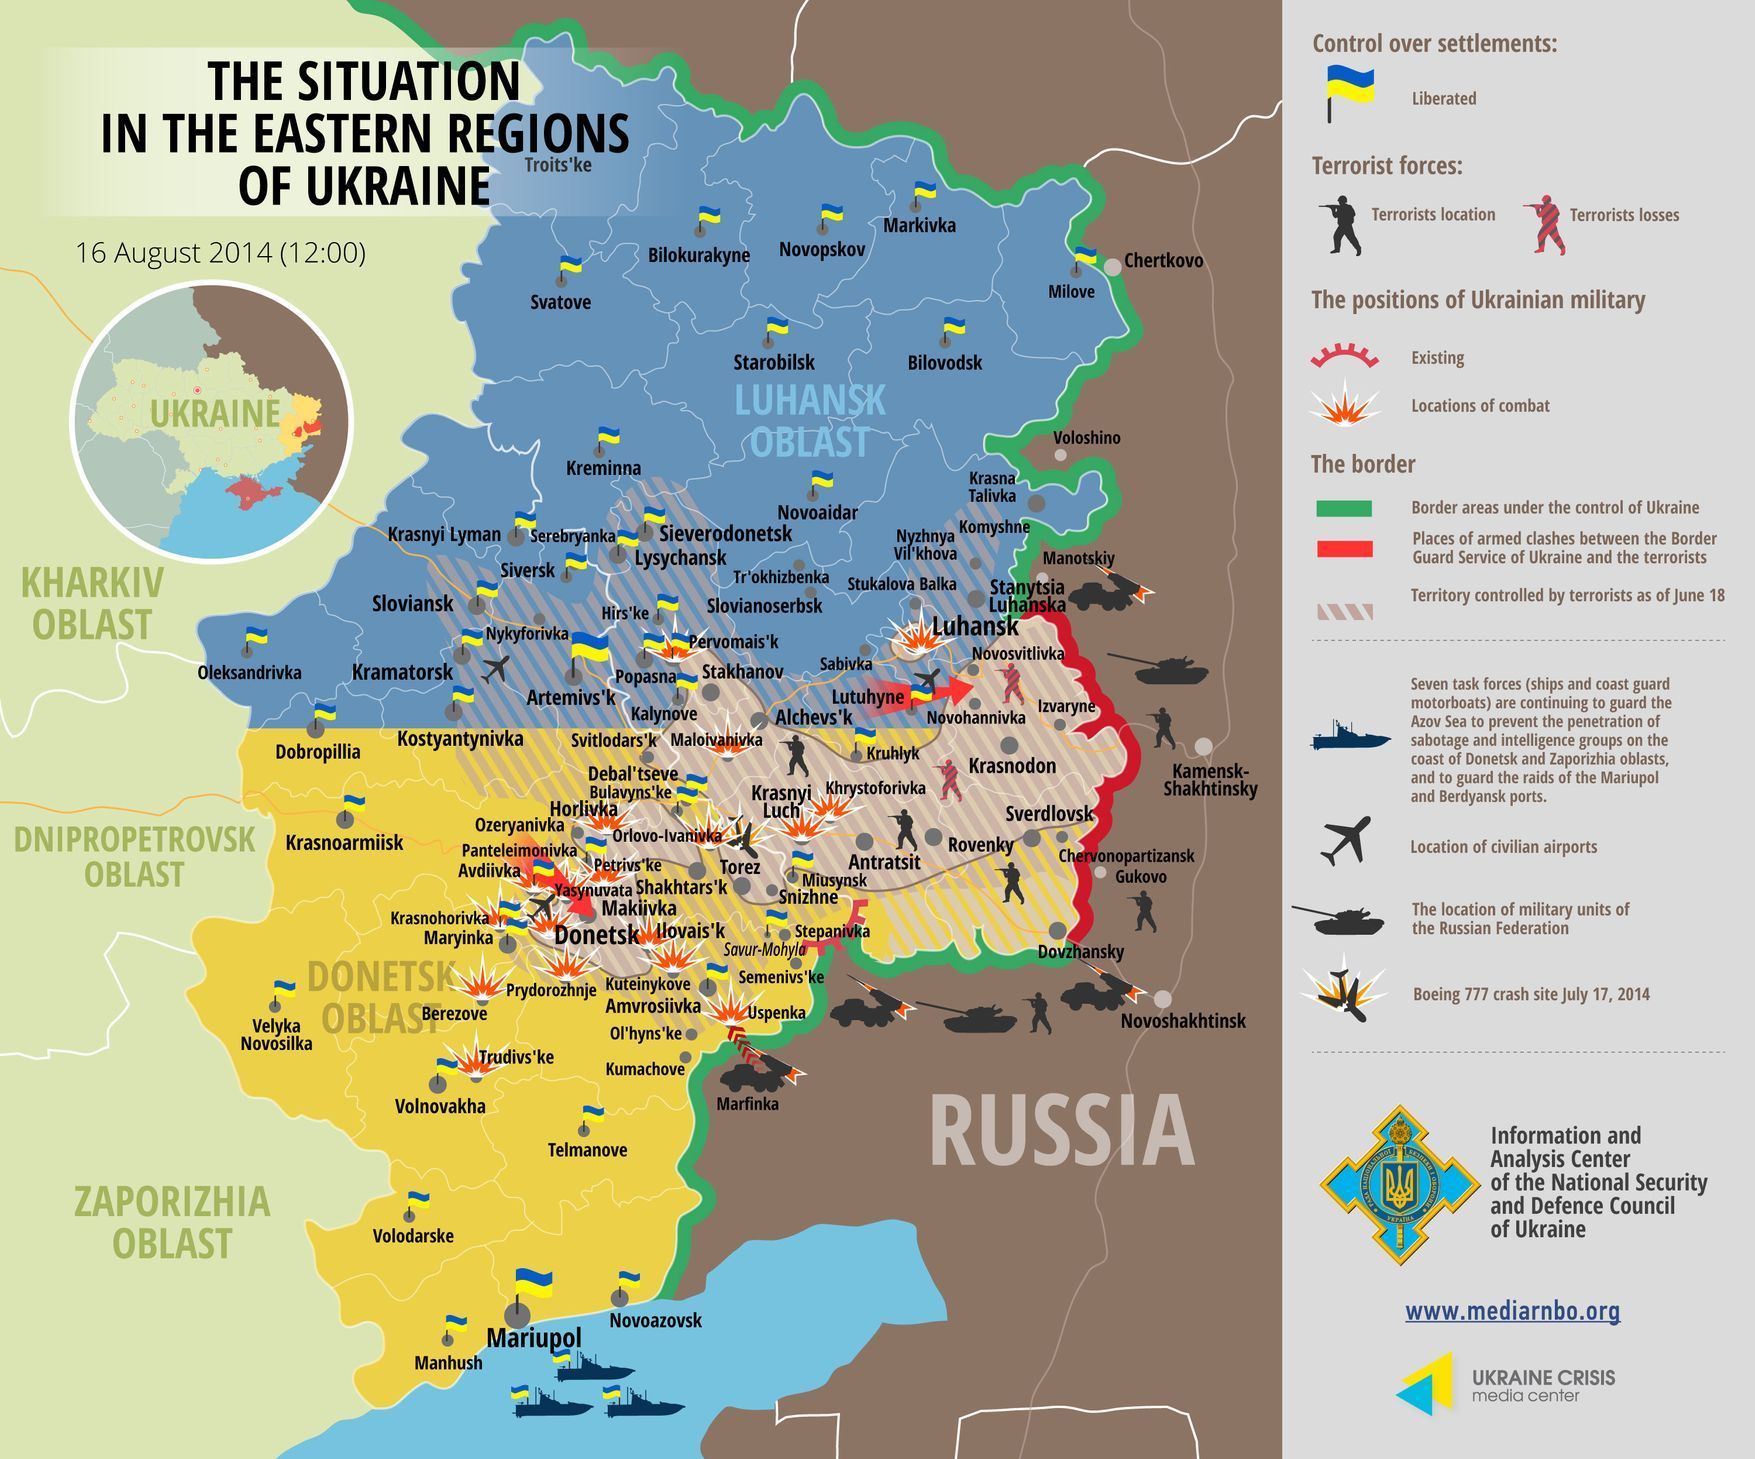 Ukrajina - mapa bojů 18.8. podle Ukraine Crisis Media Center